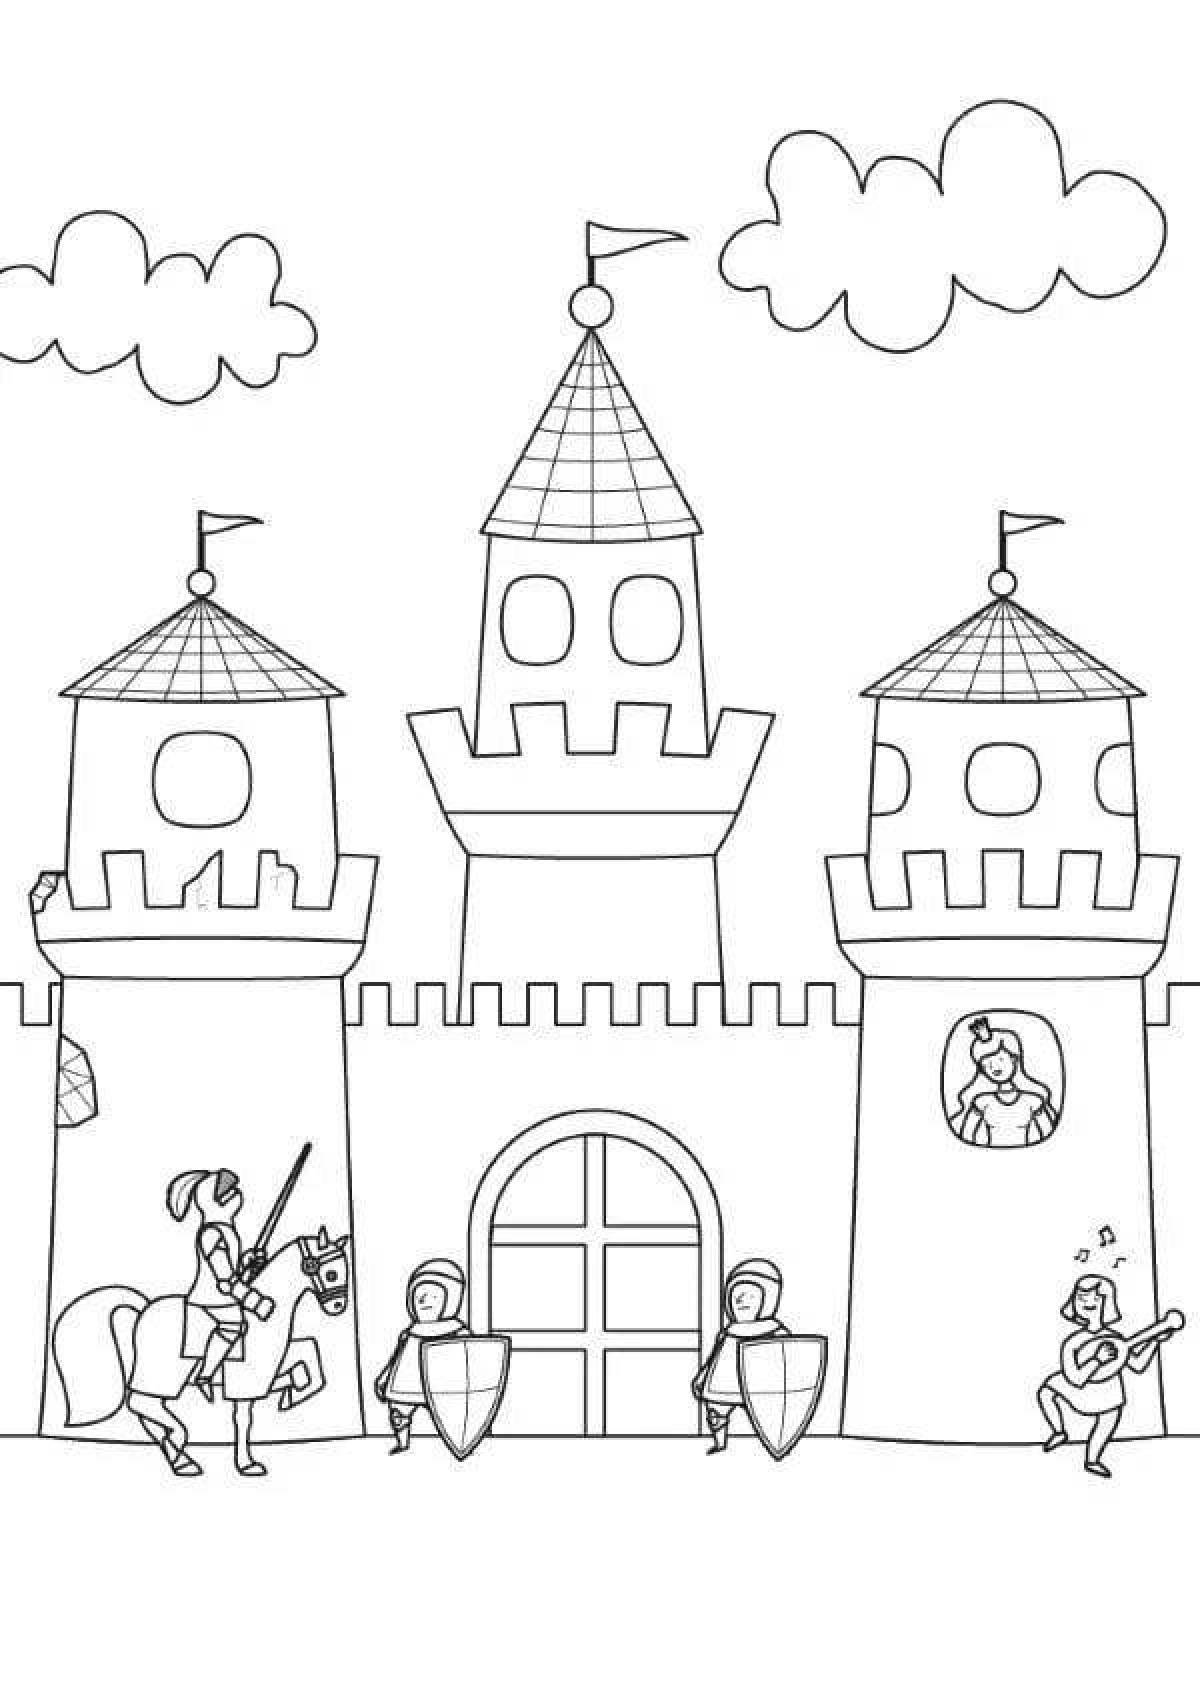 Coloring book bright knight's castle